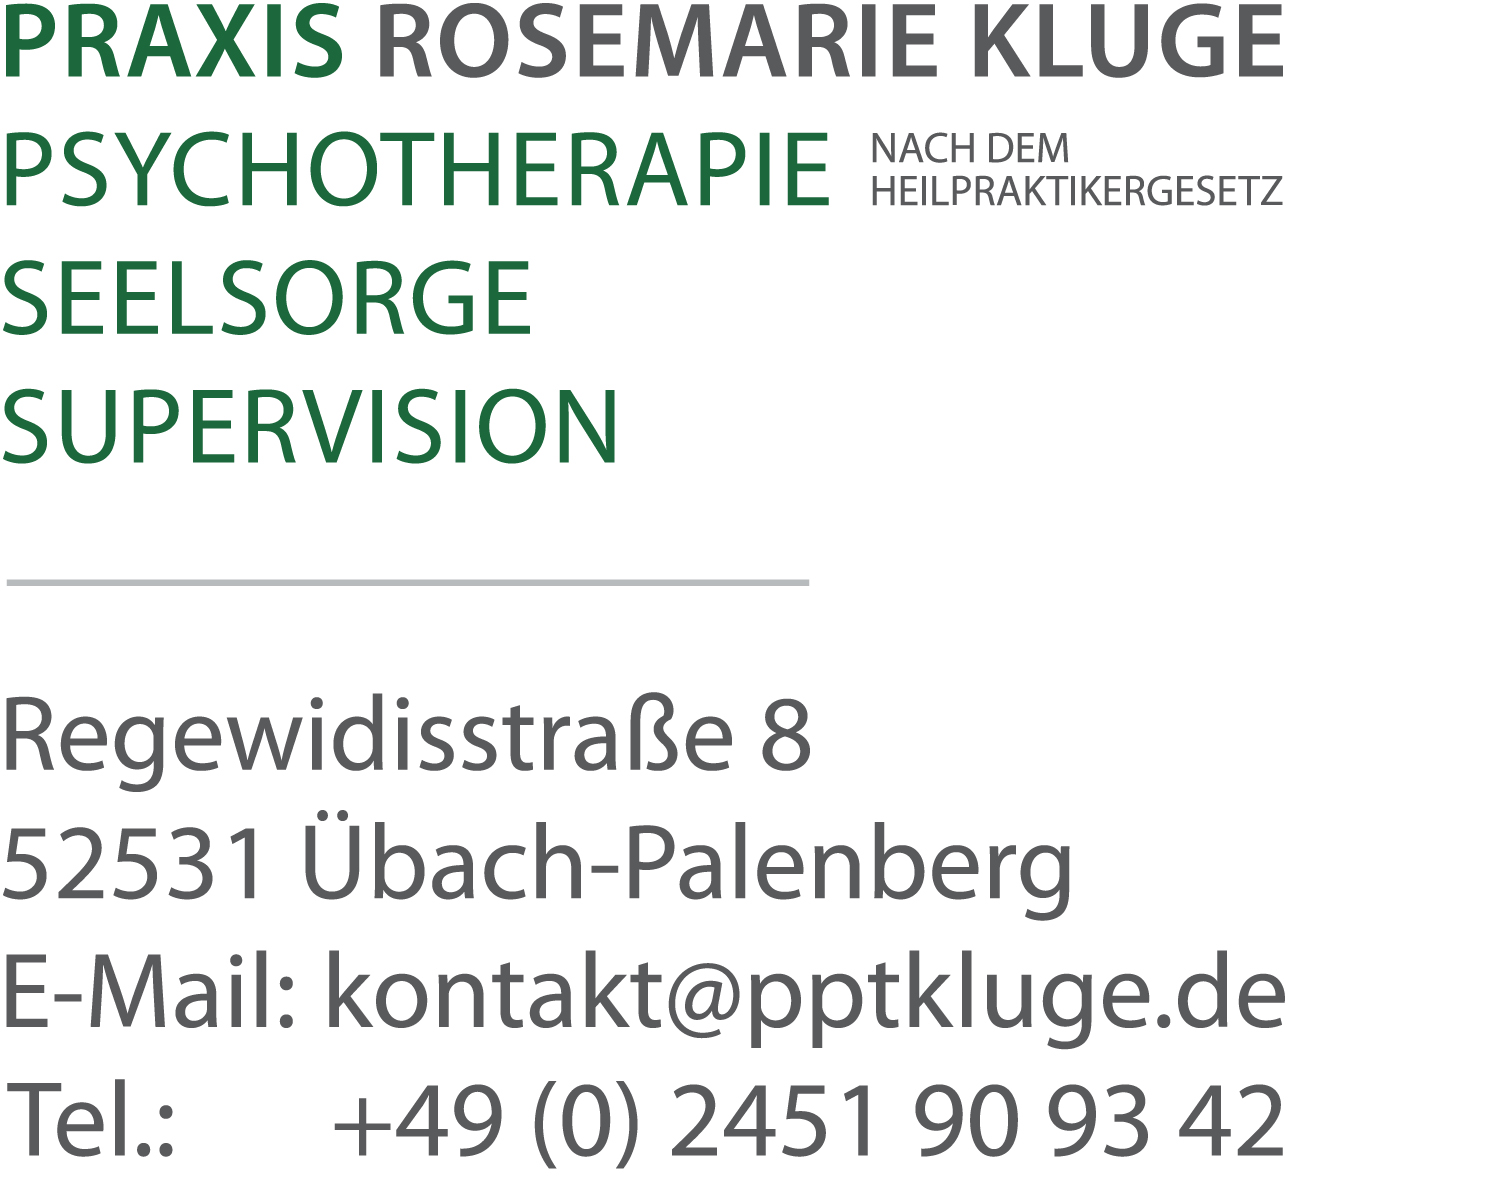 Rosemarie Kluge, Regewidisstr. 8, 52531 Übach-Palenberg